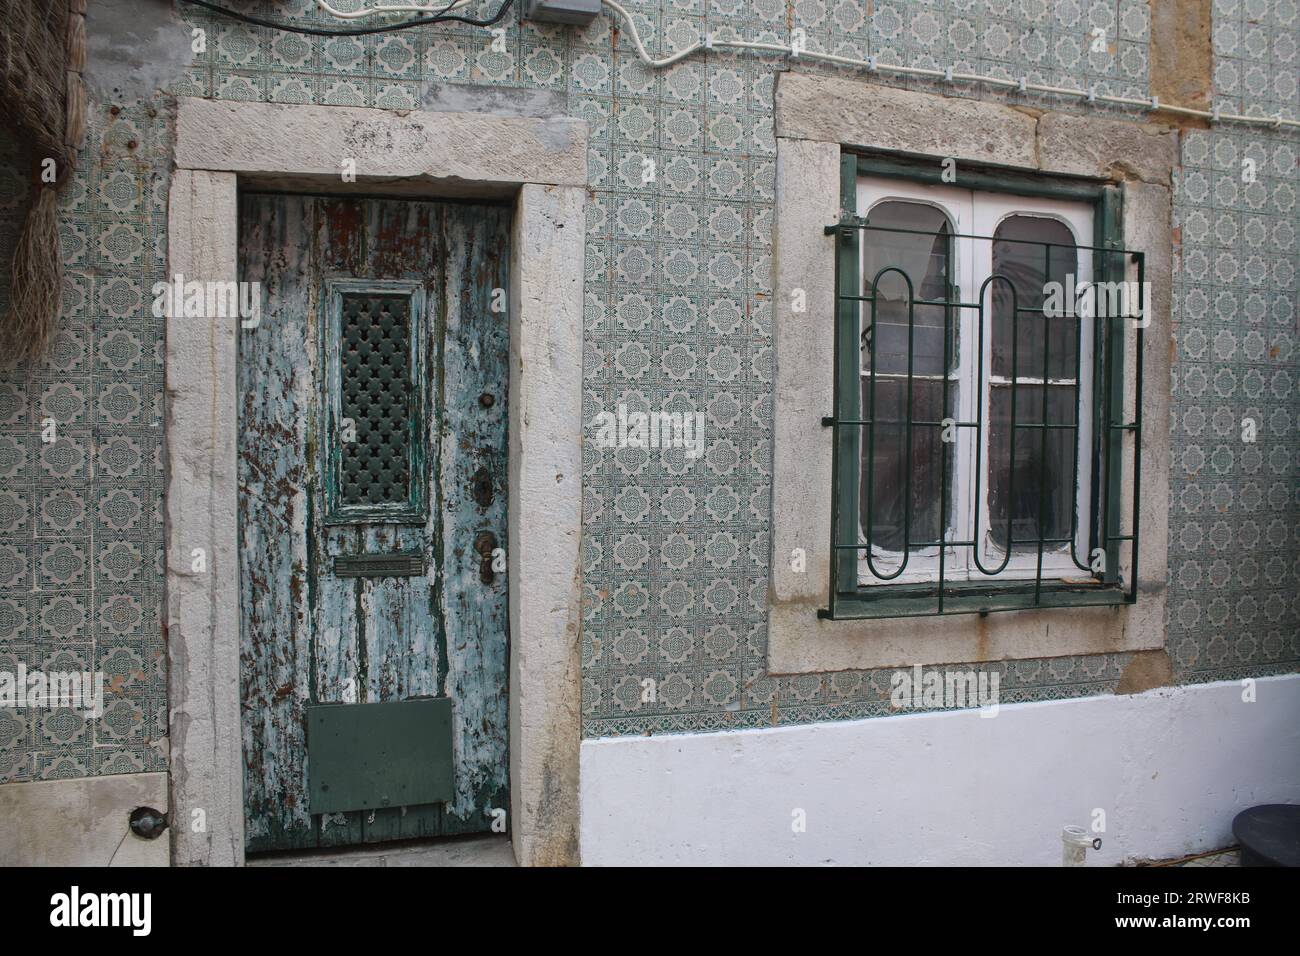 Vordertür in Vintage-Optik mit Lackierung und Metallgrill mit Fenstermuster, umgeben von grün und weiß gemusterten portugiesischen Wandfliesen. Stockfoto